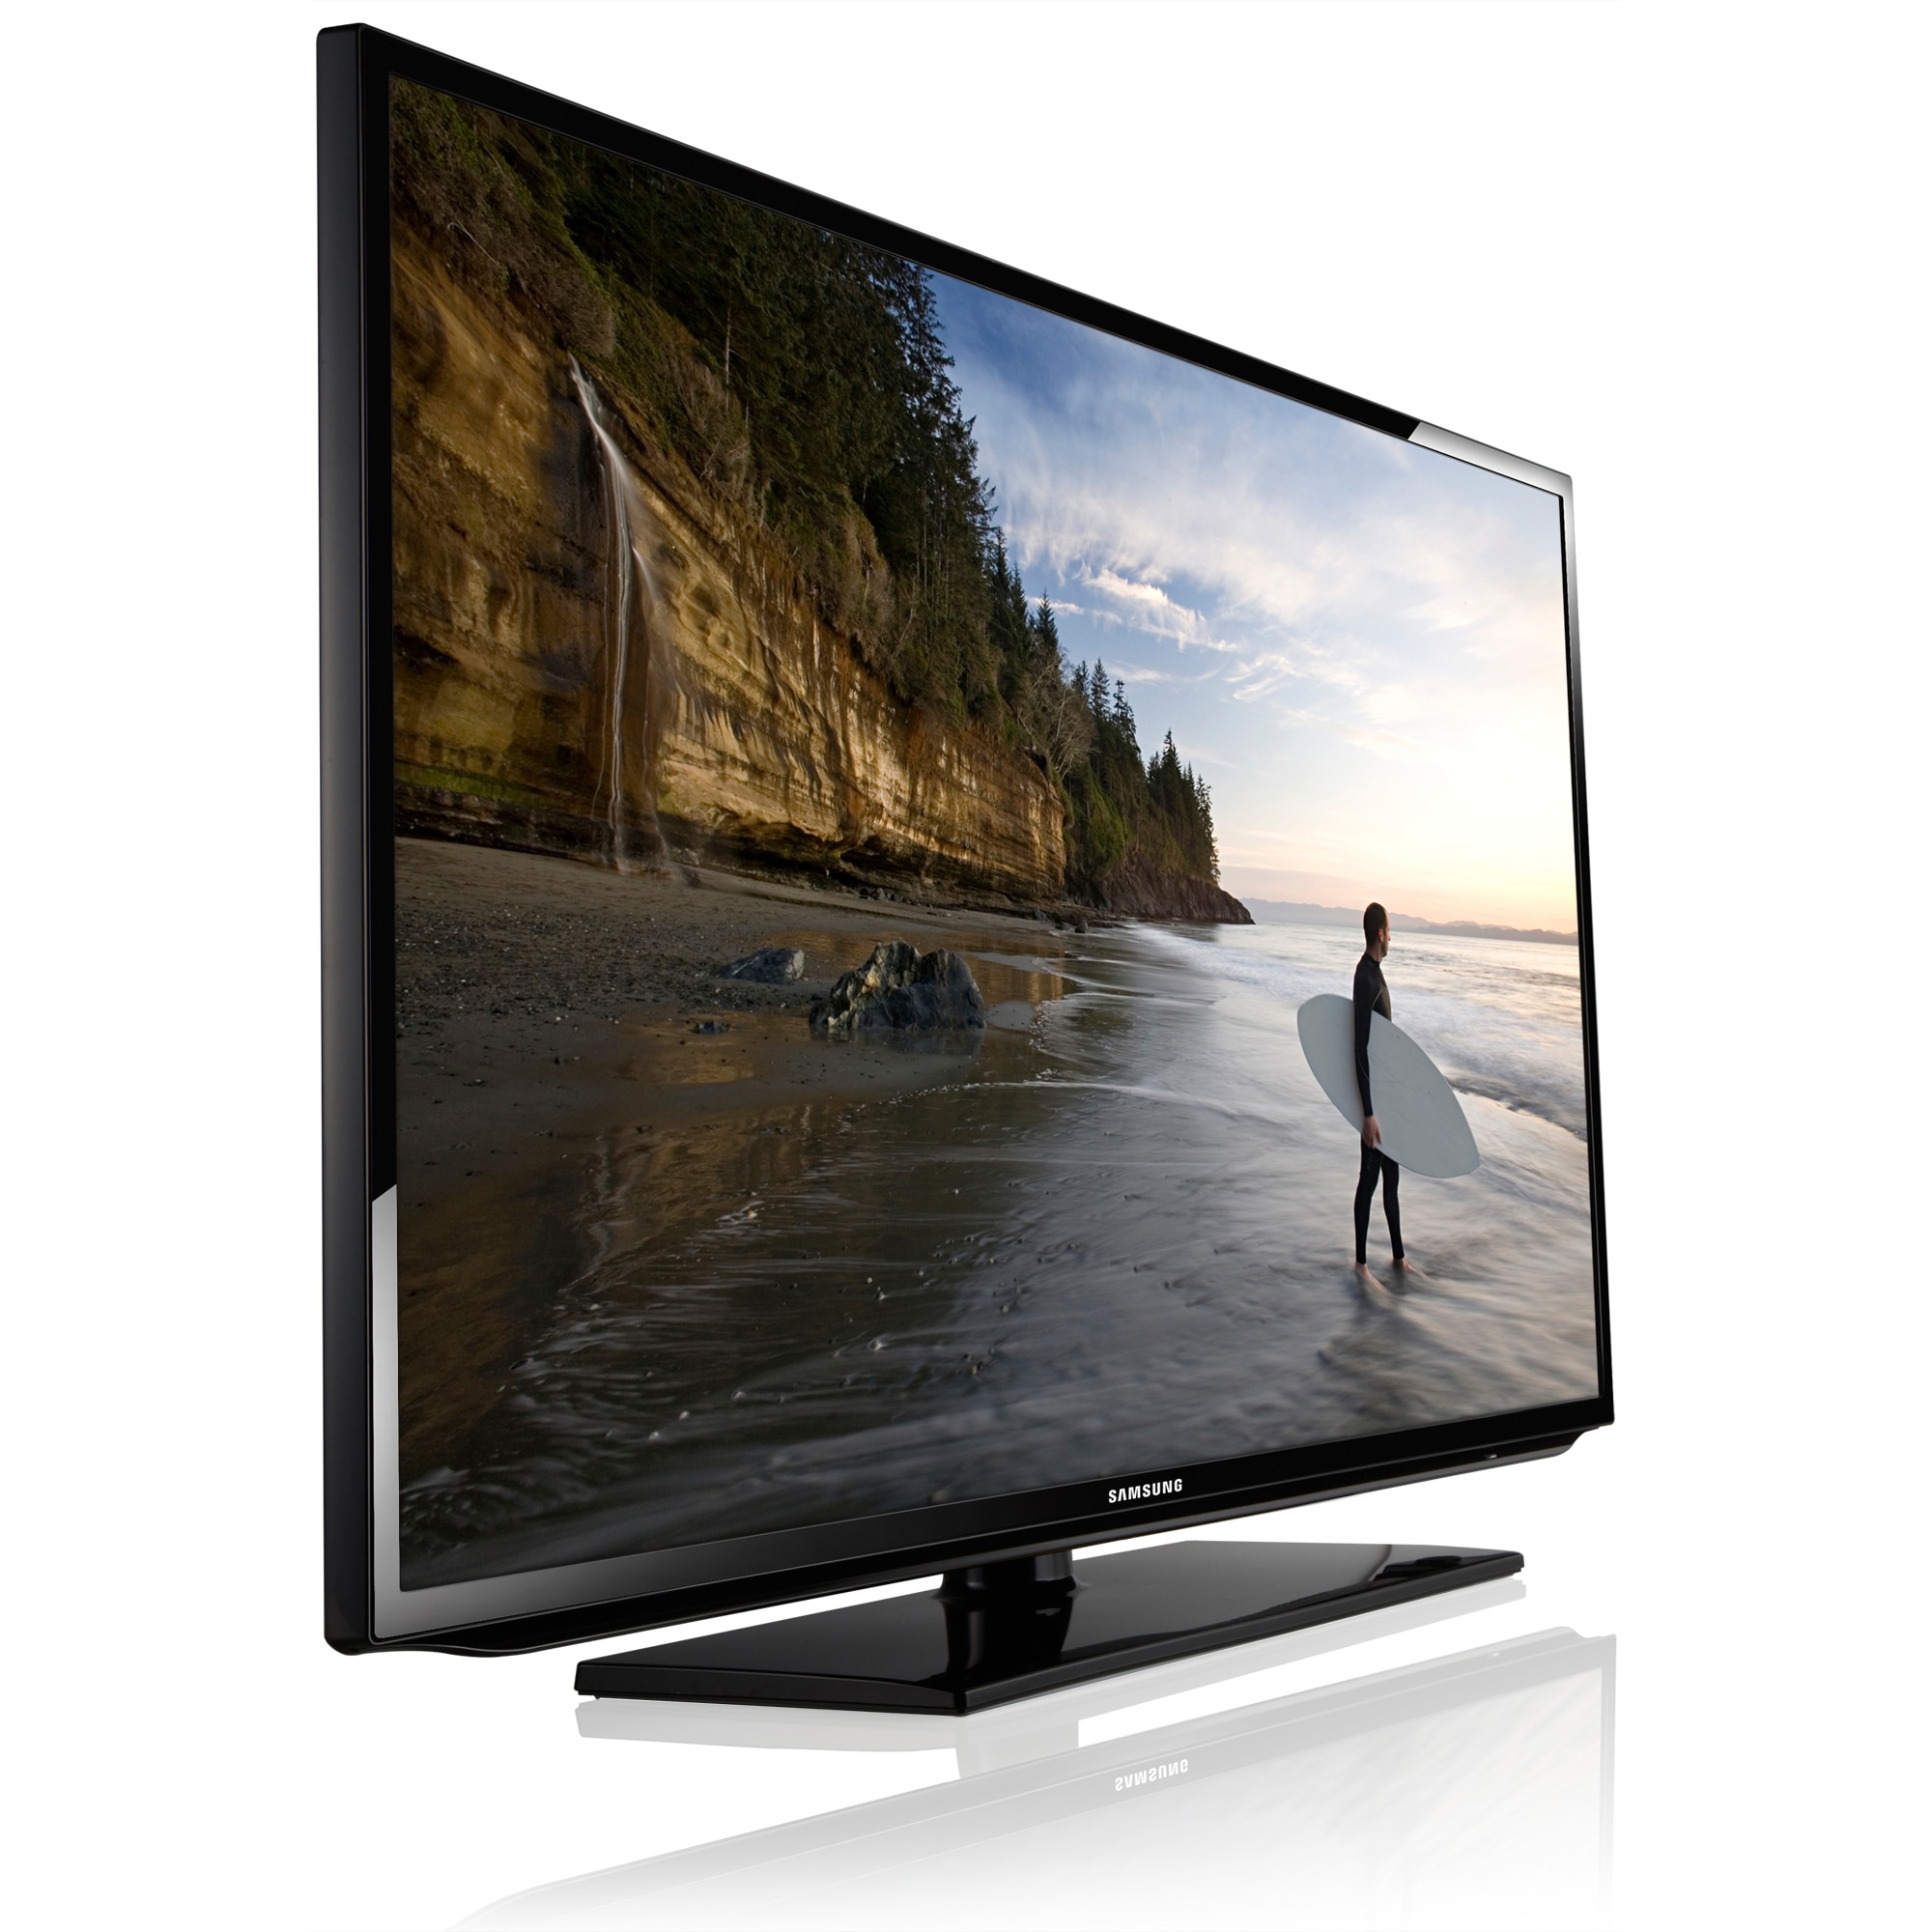 Купить телевизор в сочи. Samsung Smart TV 32 ue32es5507v. Samsung ue40es5537k. Телевизор Samsung ue50es5507 50". Телевизор Samsung ue40eh5300 40".